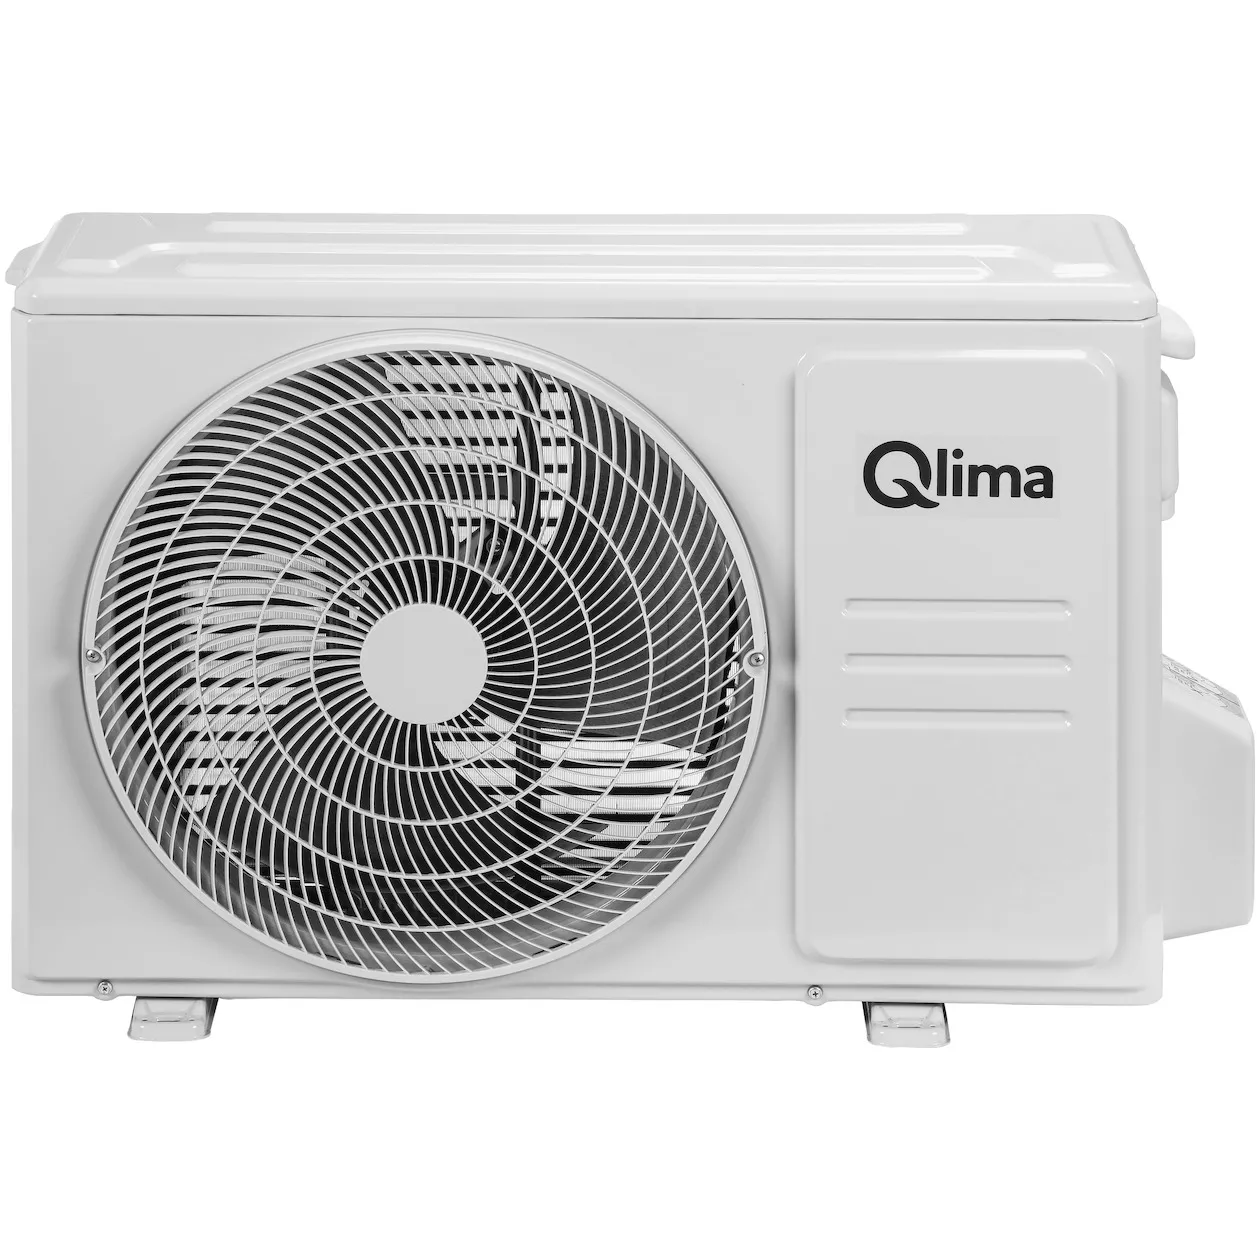 Qlima S 6026 compleet (zonder snelkoppeling)